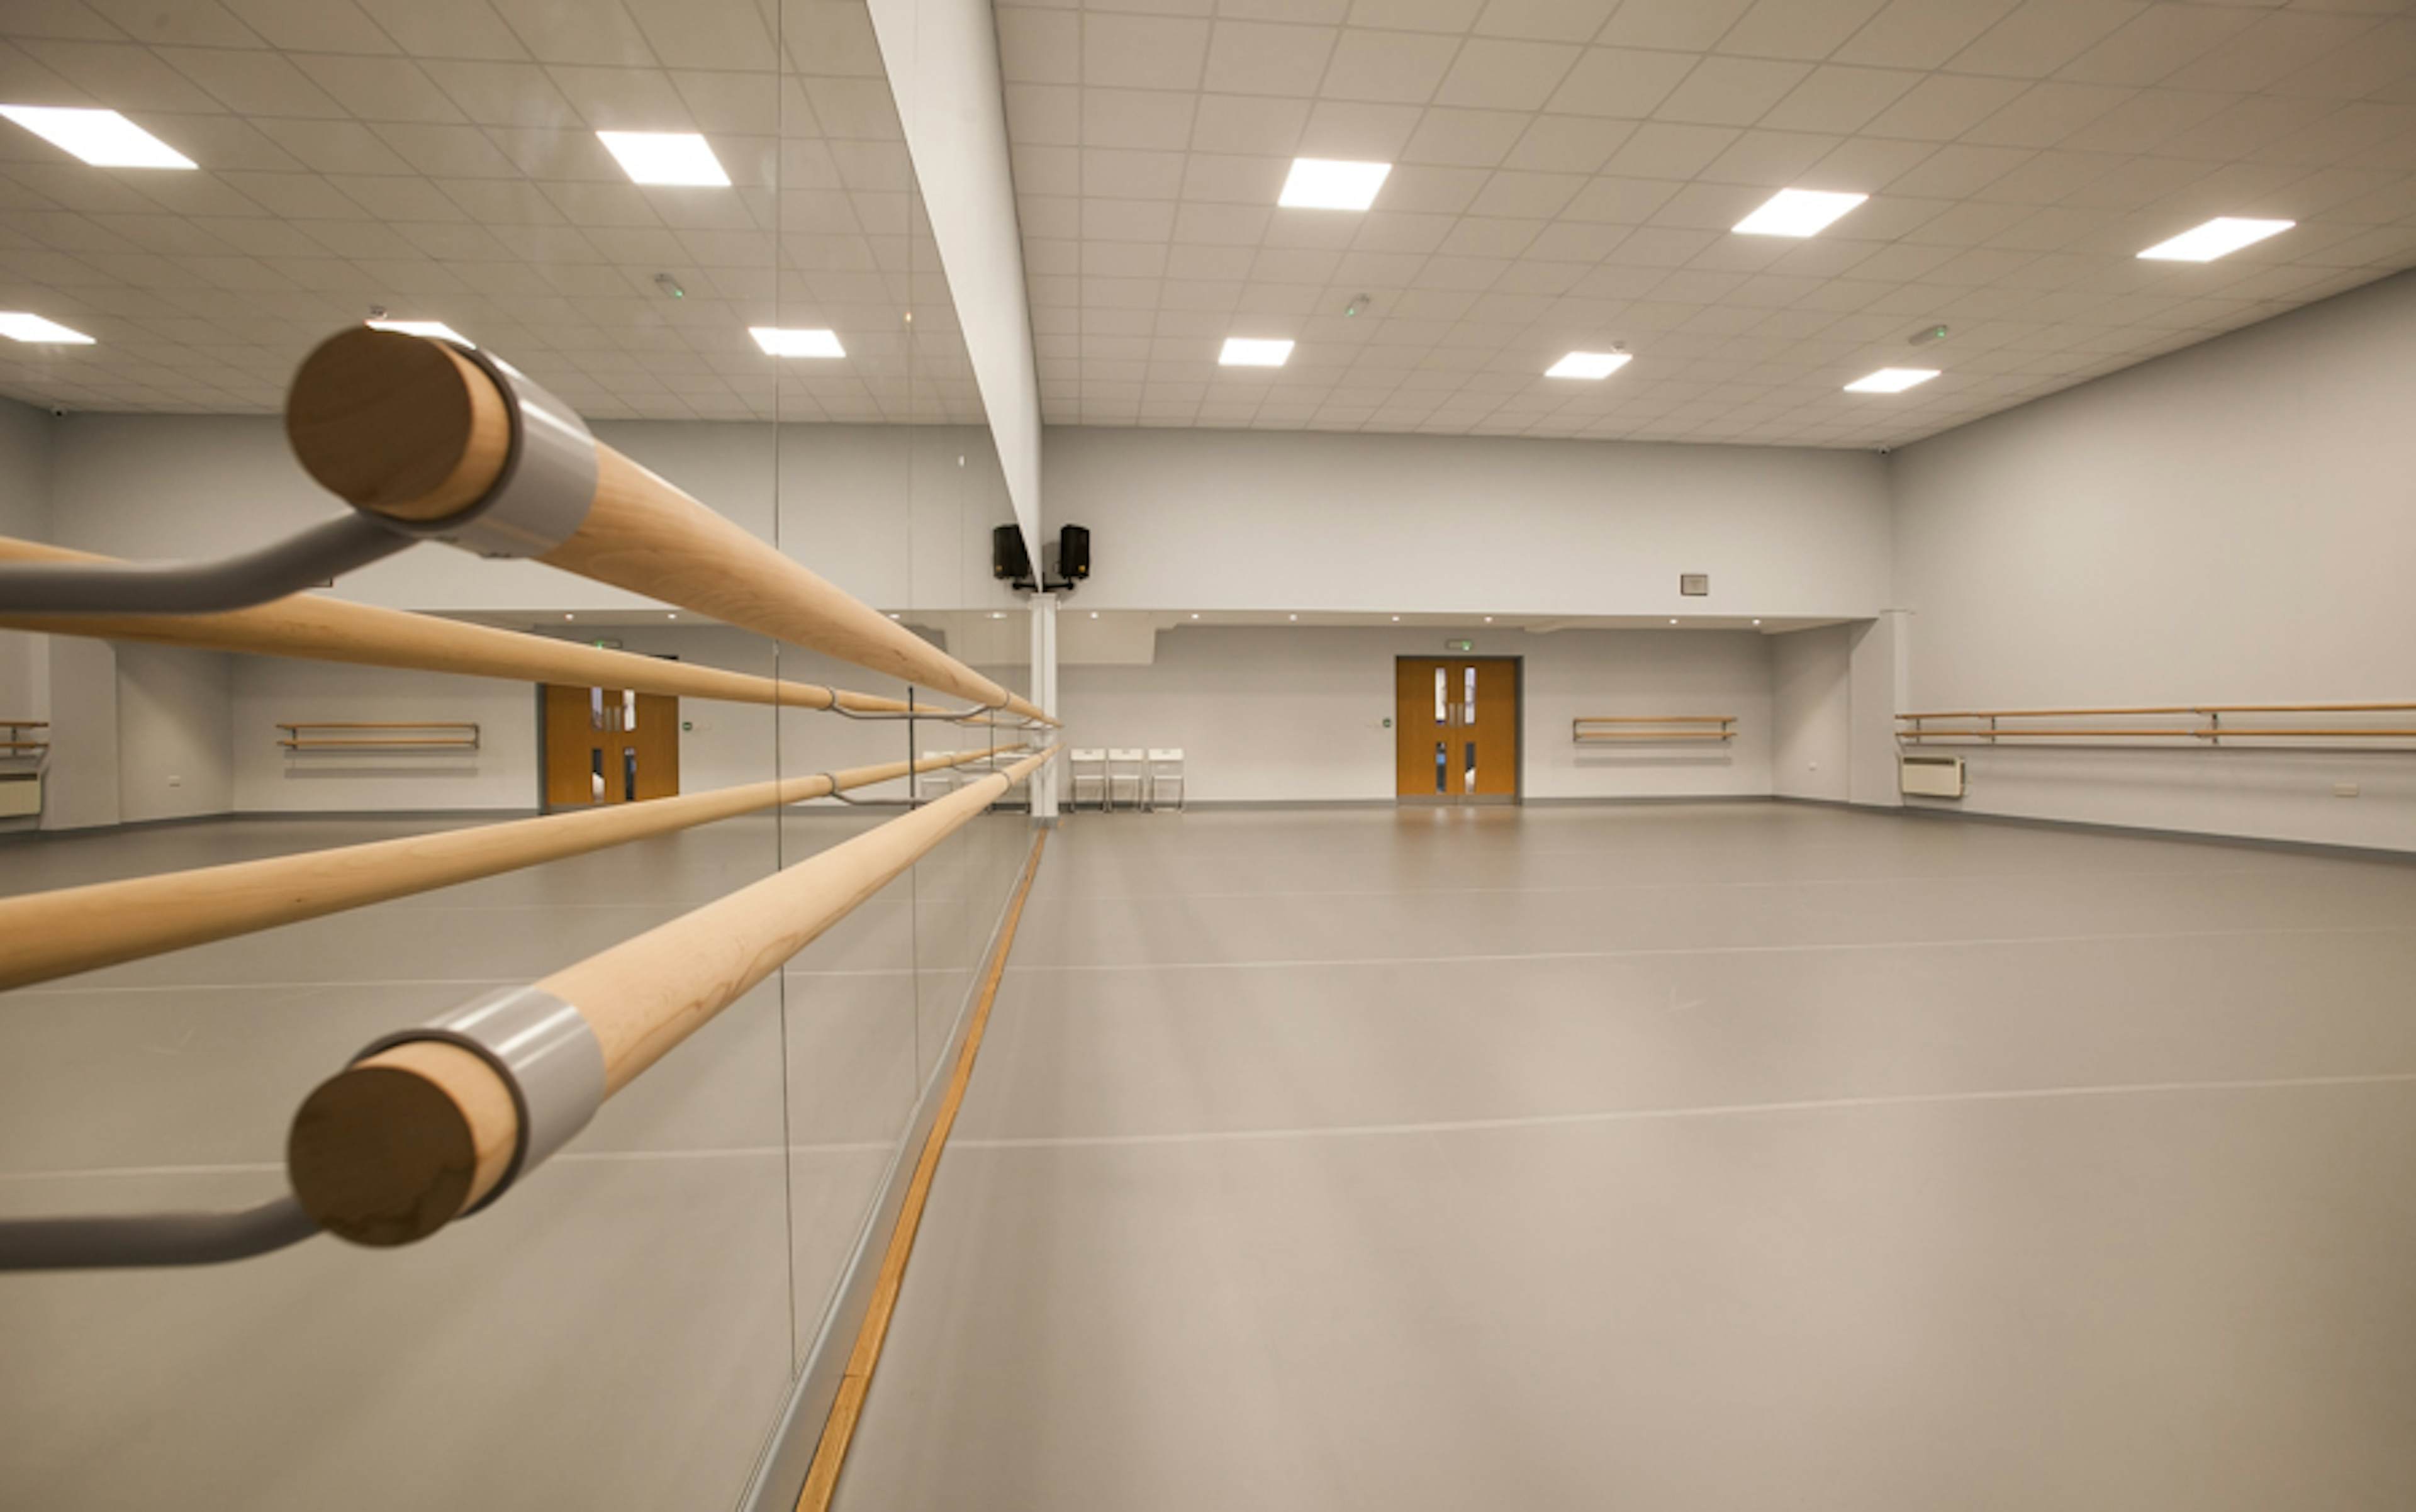 The Studios - Adagio School of Dance - image 1